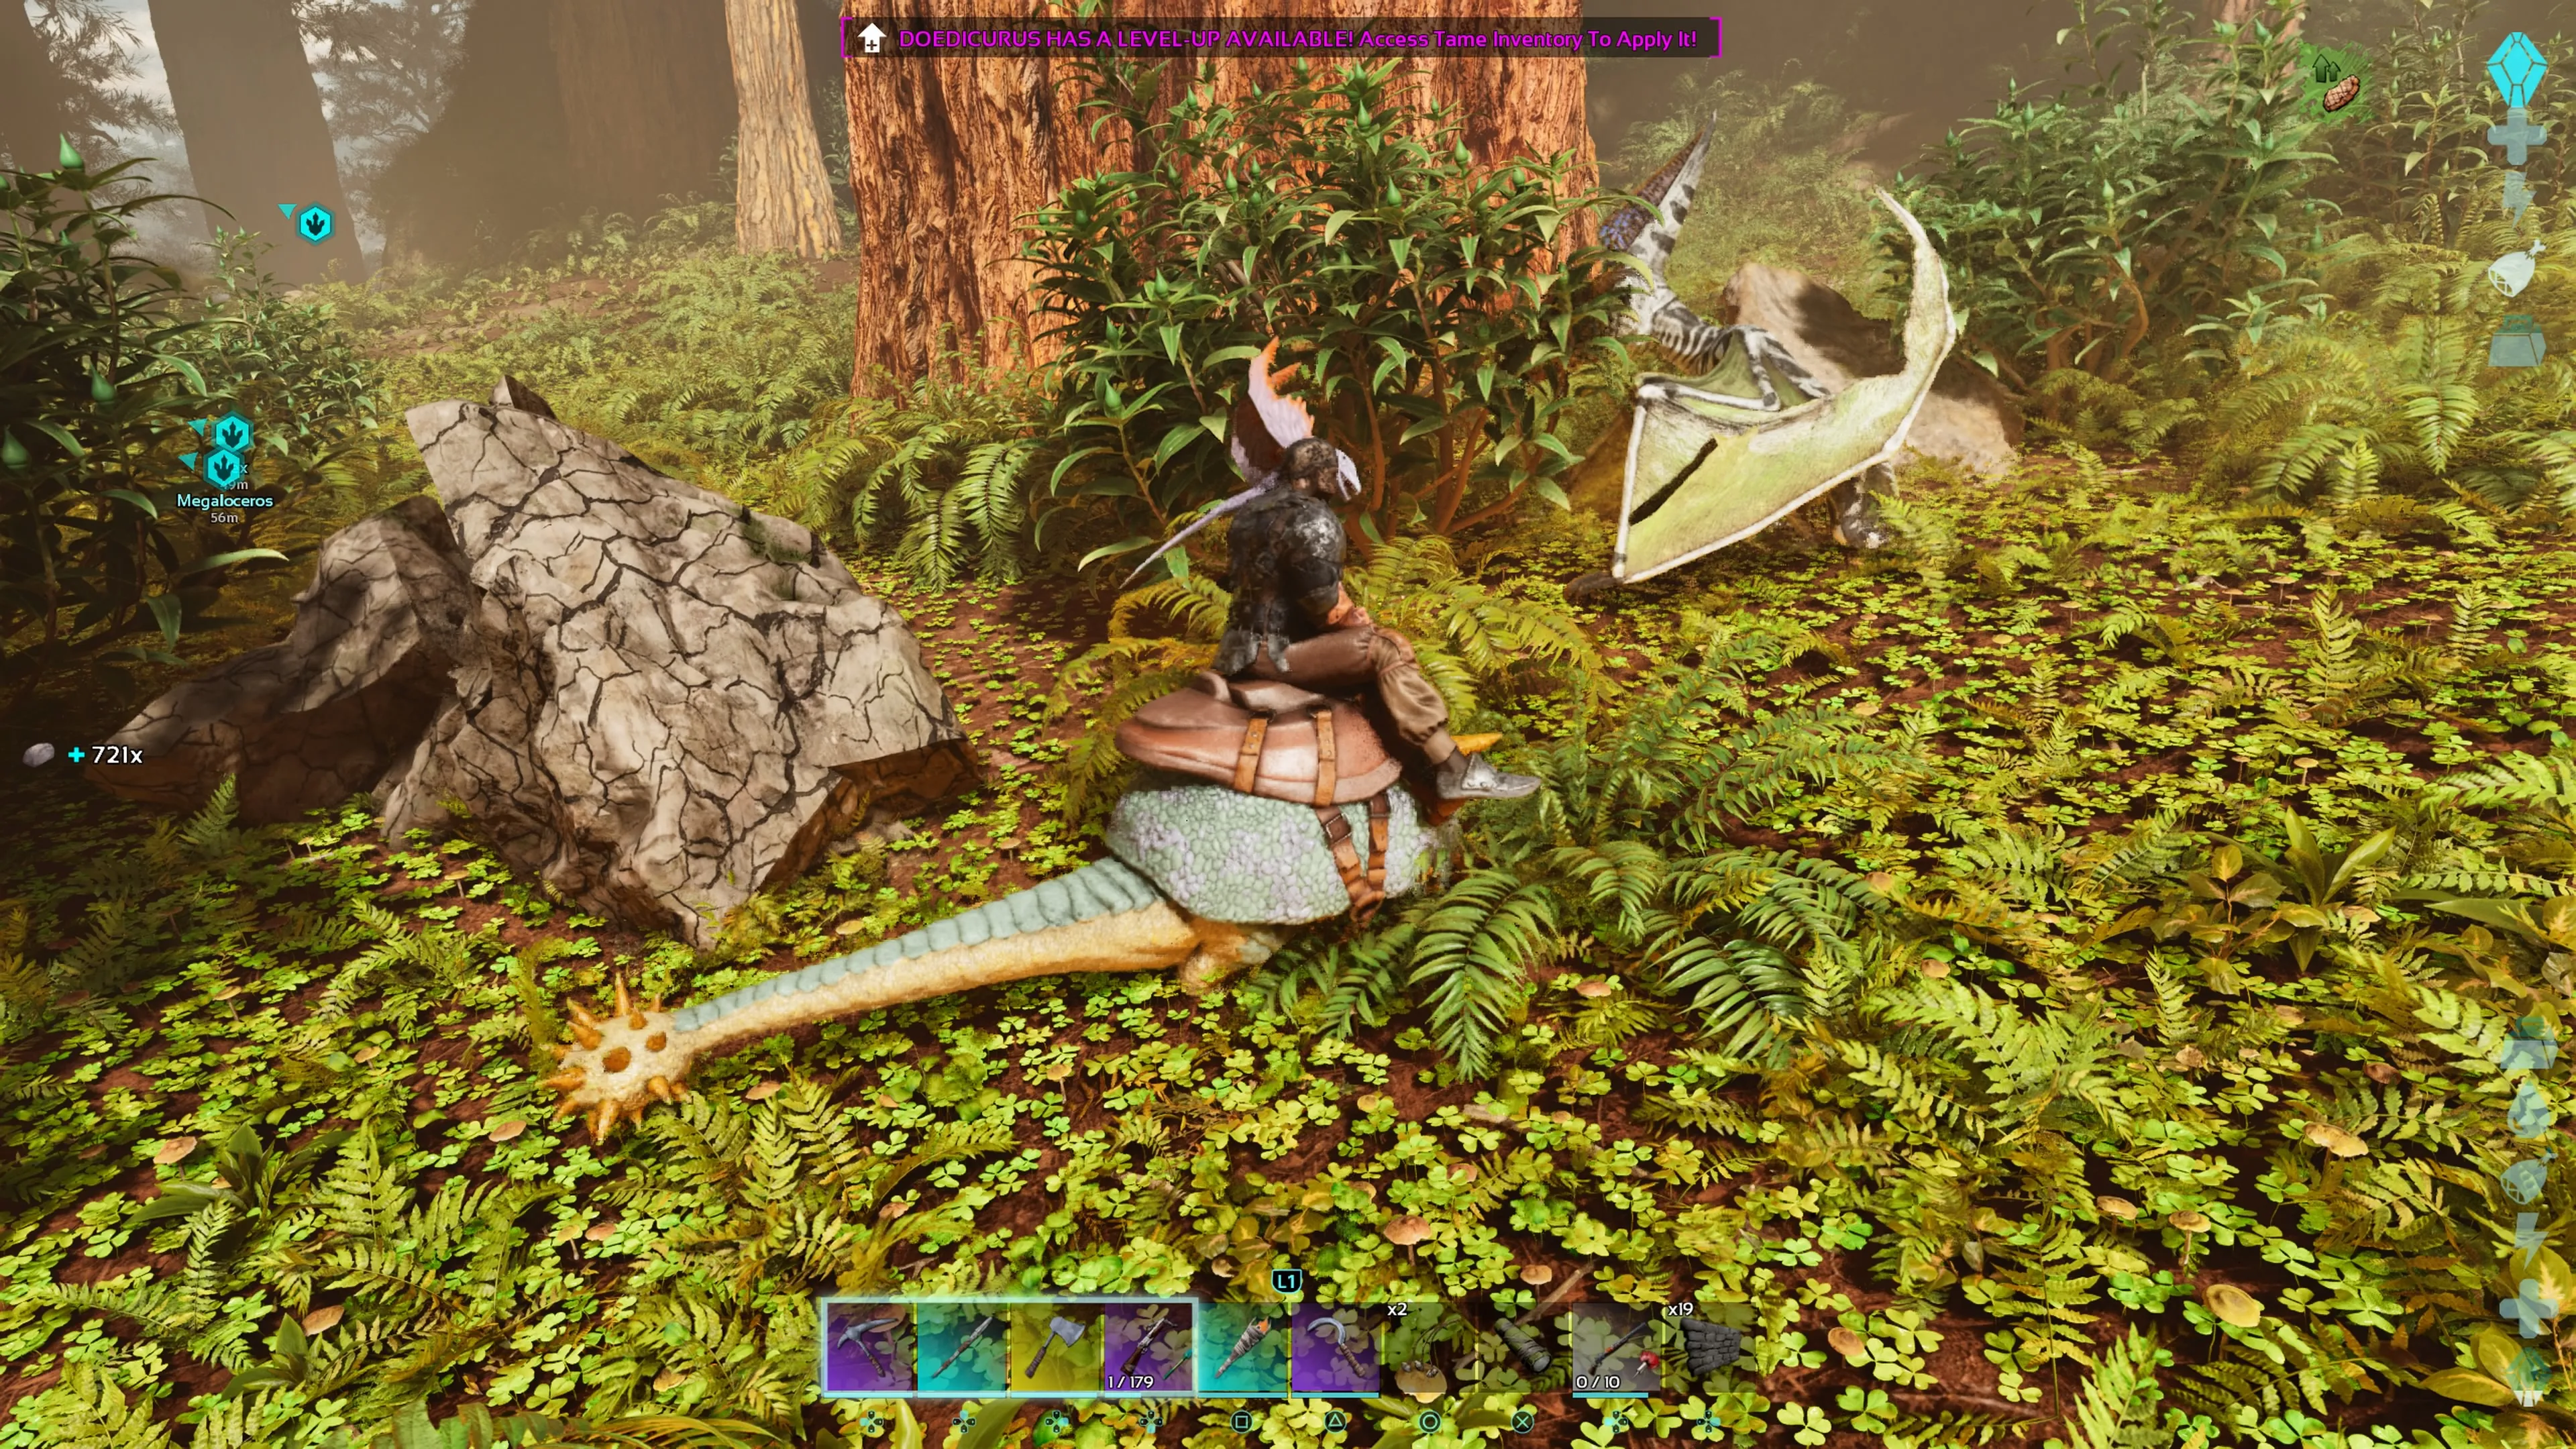 Personaje del jugador con un Dimorphodon en el hombro montando un Doedicurus ensillado y rompiendo una roca grande con él en ARK: Survival Ascended.